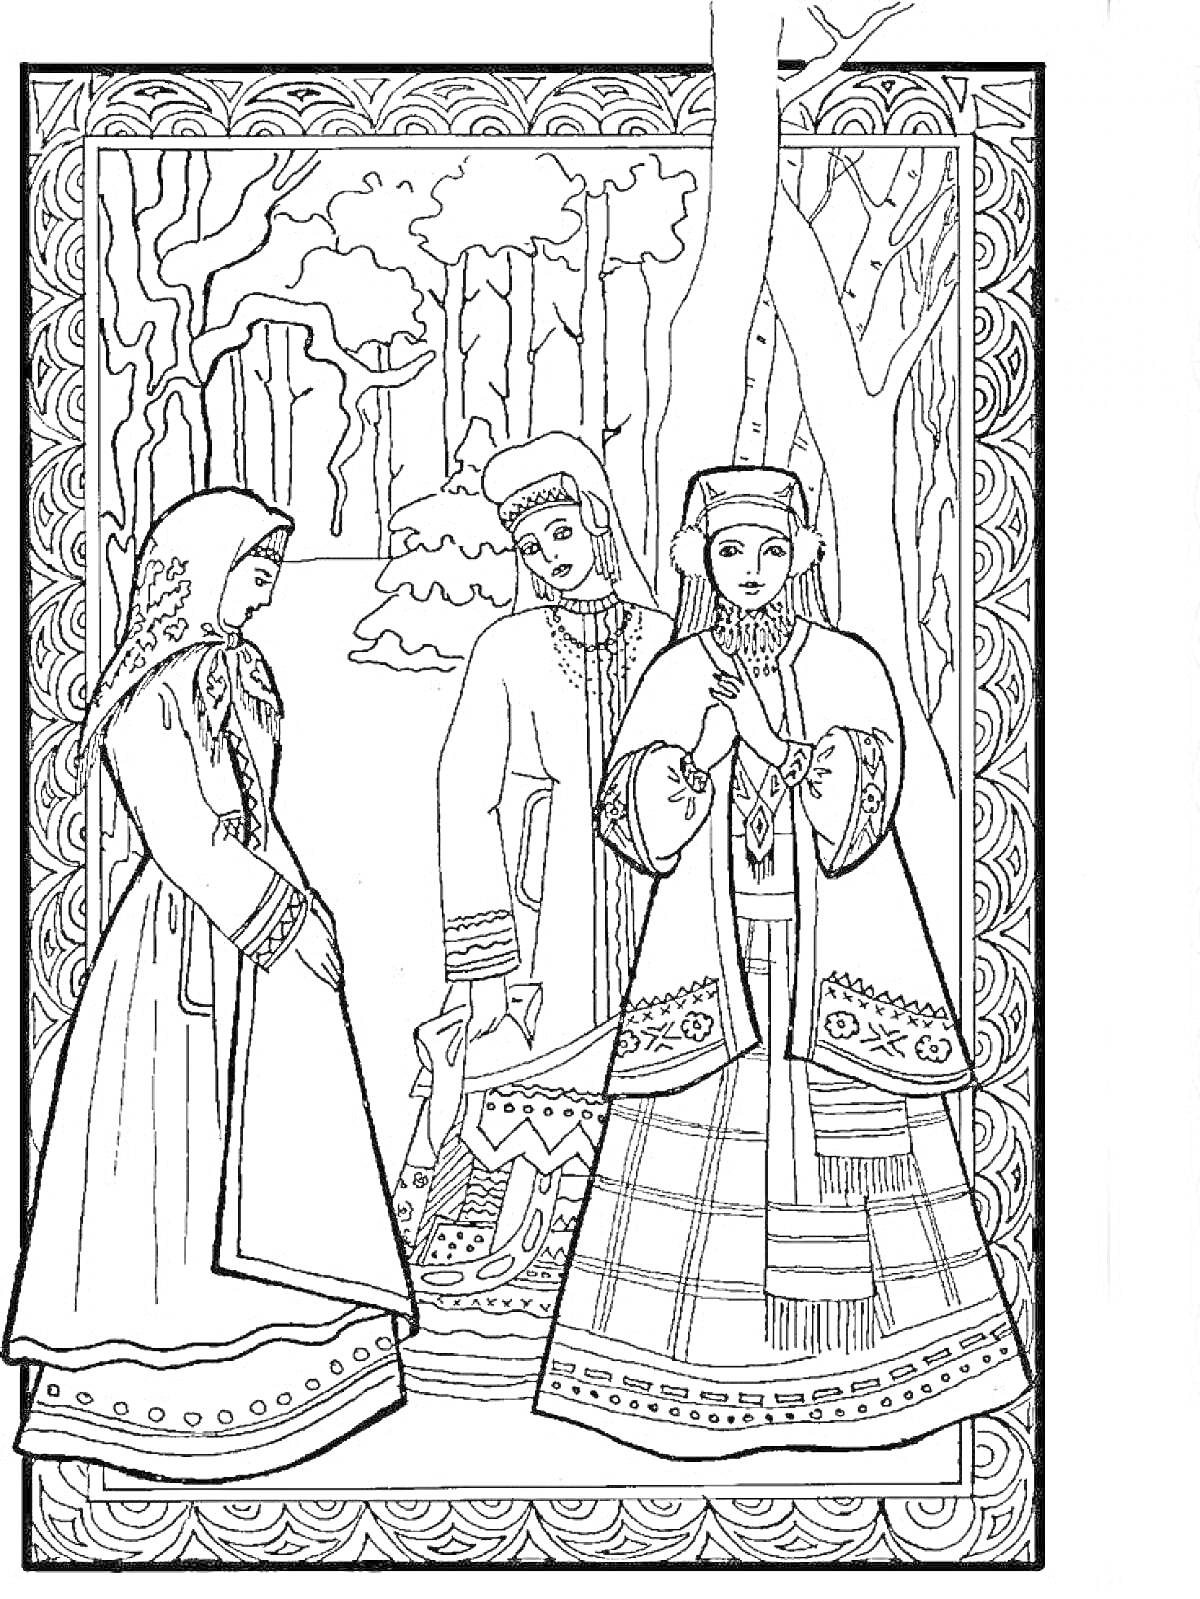 Русский народный костюм. Три фигуры в традиционной одежде, состоящей из сарафанов, кокошников и косовороток. На фоне лесной пейзаж.